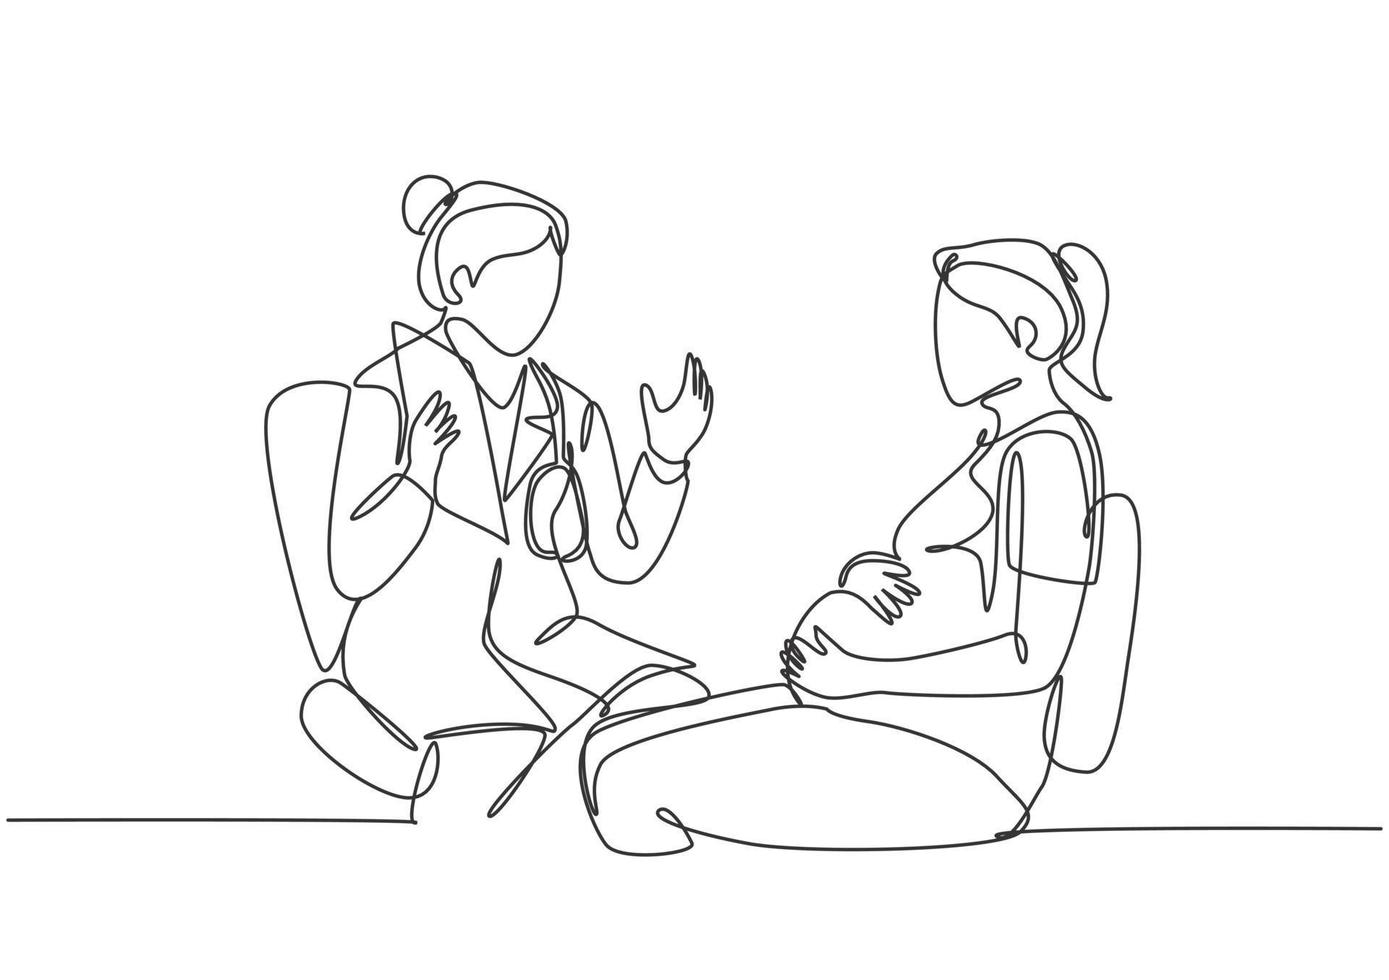 un seul dessin d'une femme médecin en obstétrique et gynécologie donnant une séance de consultation à la patiente enceinte. concept de soins de santé grossesse ligne continue dessiner illustration vectorielle de conception vecteur